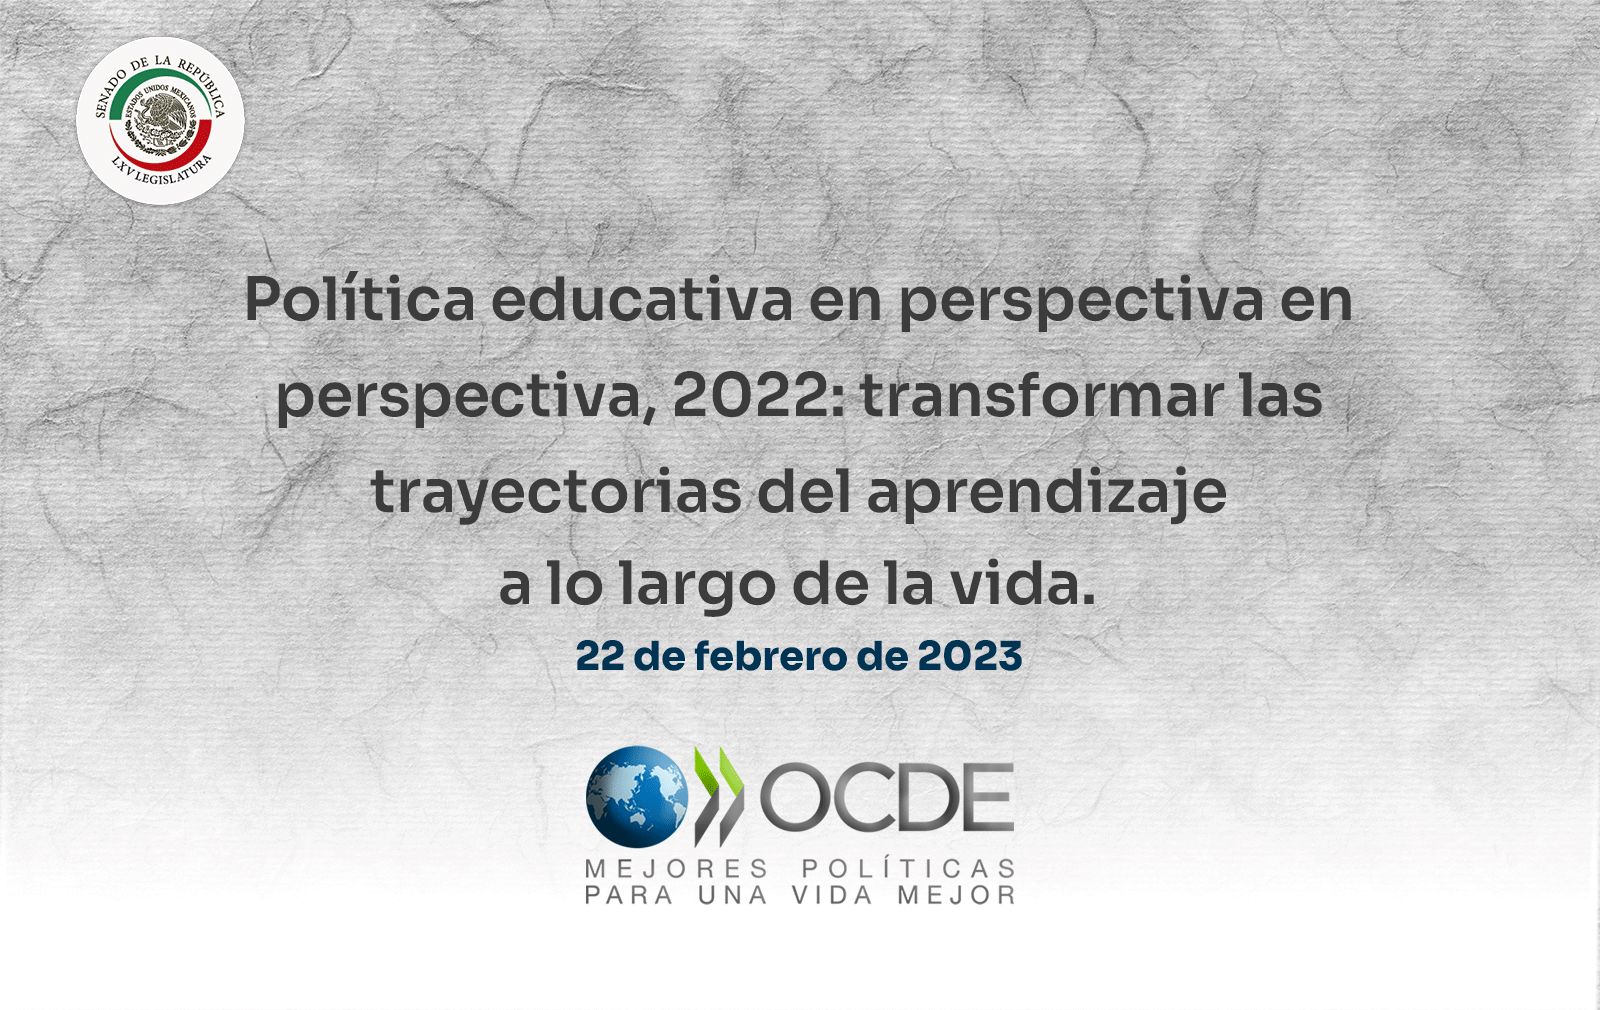 Política educativa en perspectiva en perspectiva, 2022: transformar las trayectorias del aprendizaje a lo largo de la vida. 22 de febrero de 2023